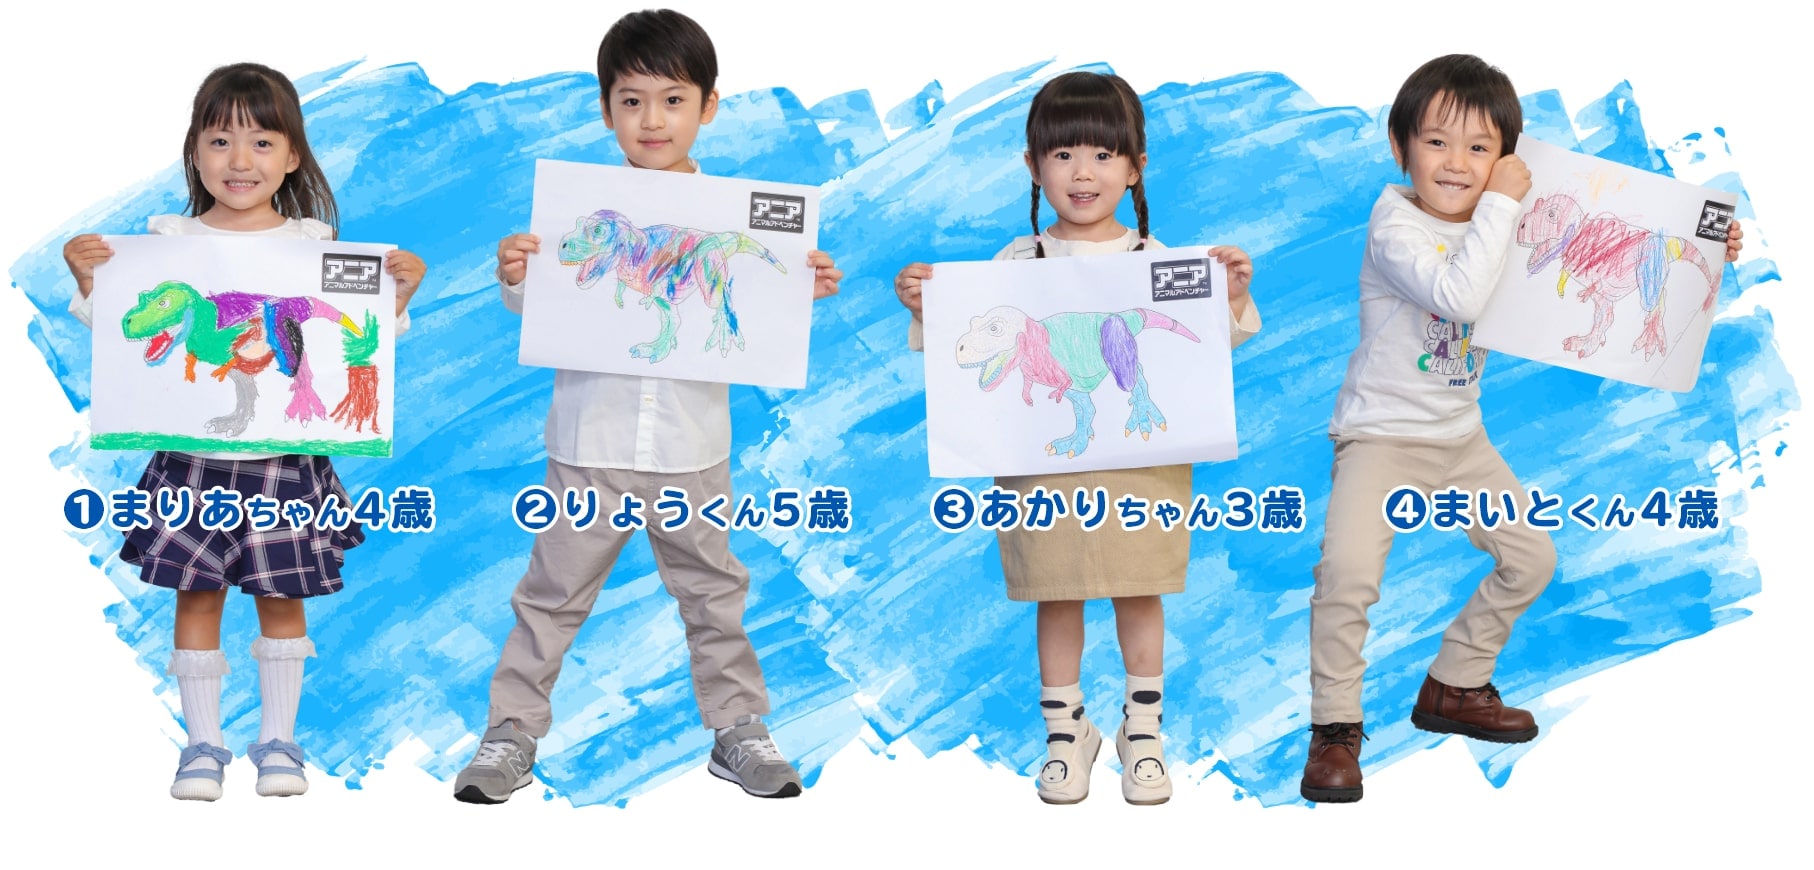 恐竜の塗り絵を持った子供達